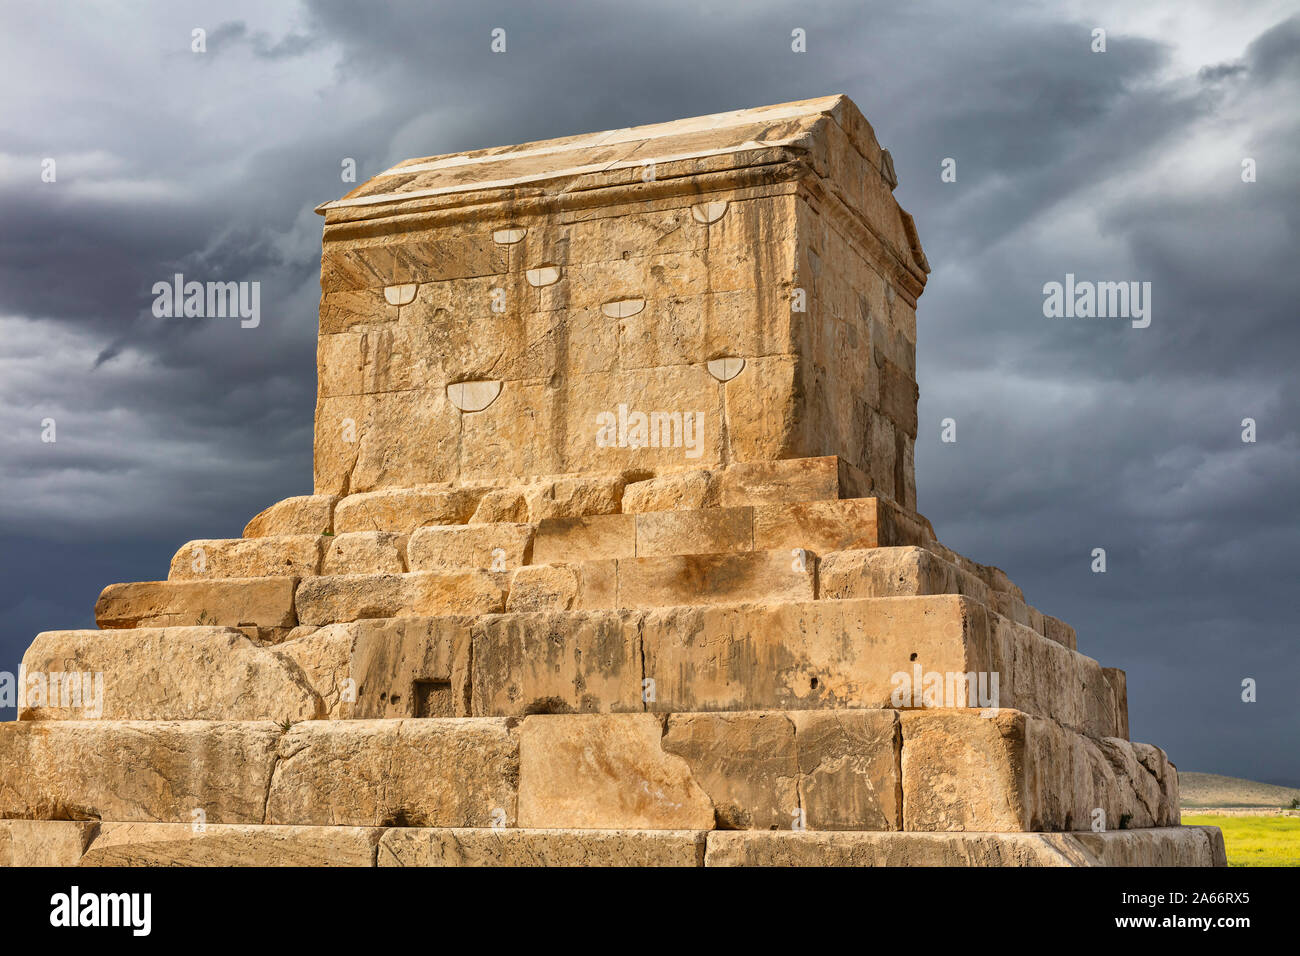 Tombe de Cyrus le Grand, vie siècle avant J.-C., Pasargades, la province du Fars, Iran Banque D'Images